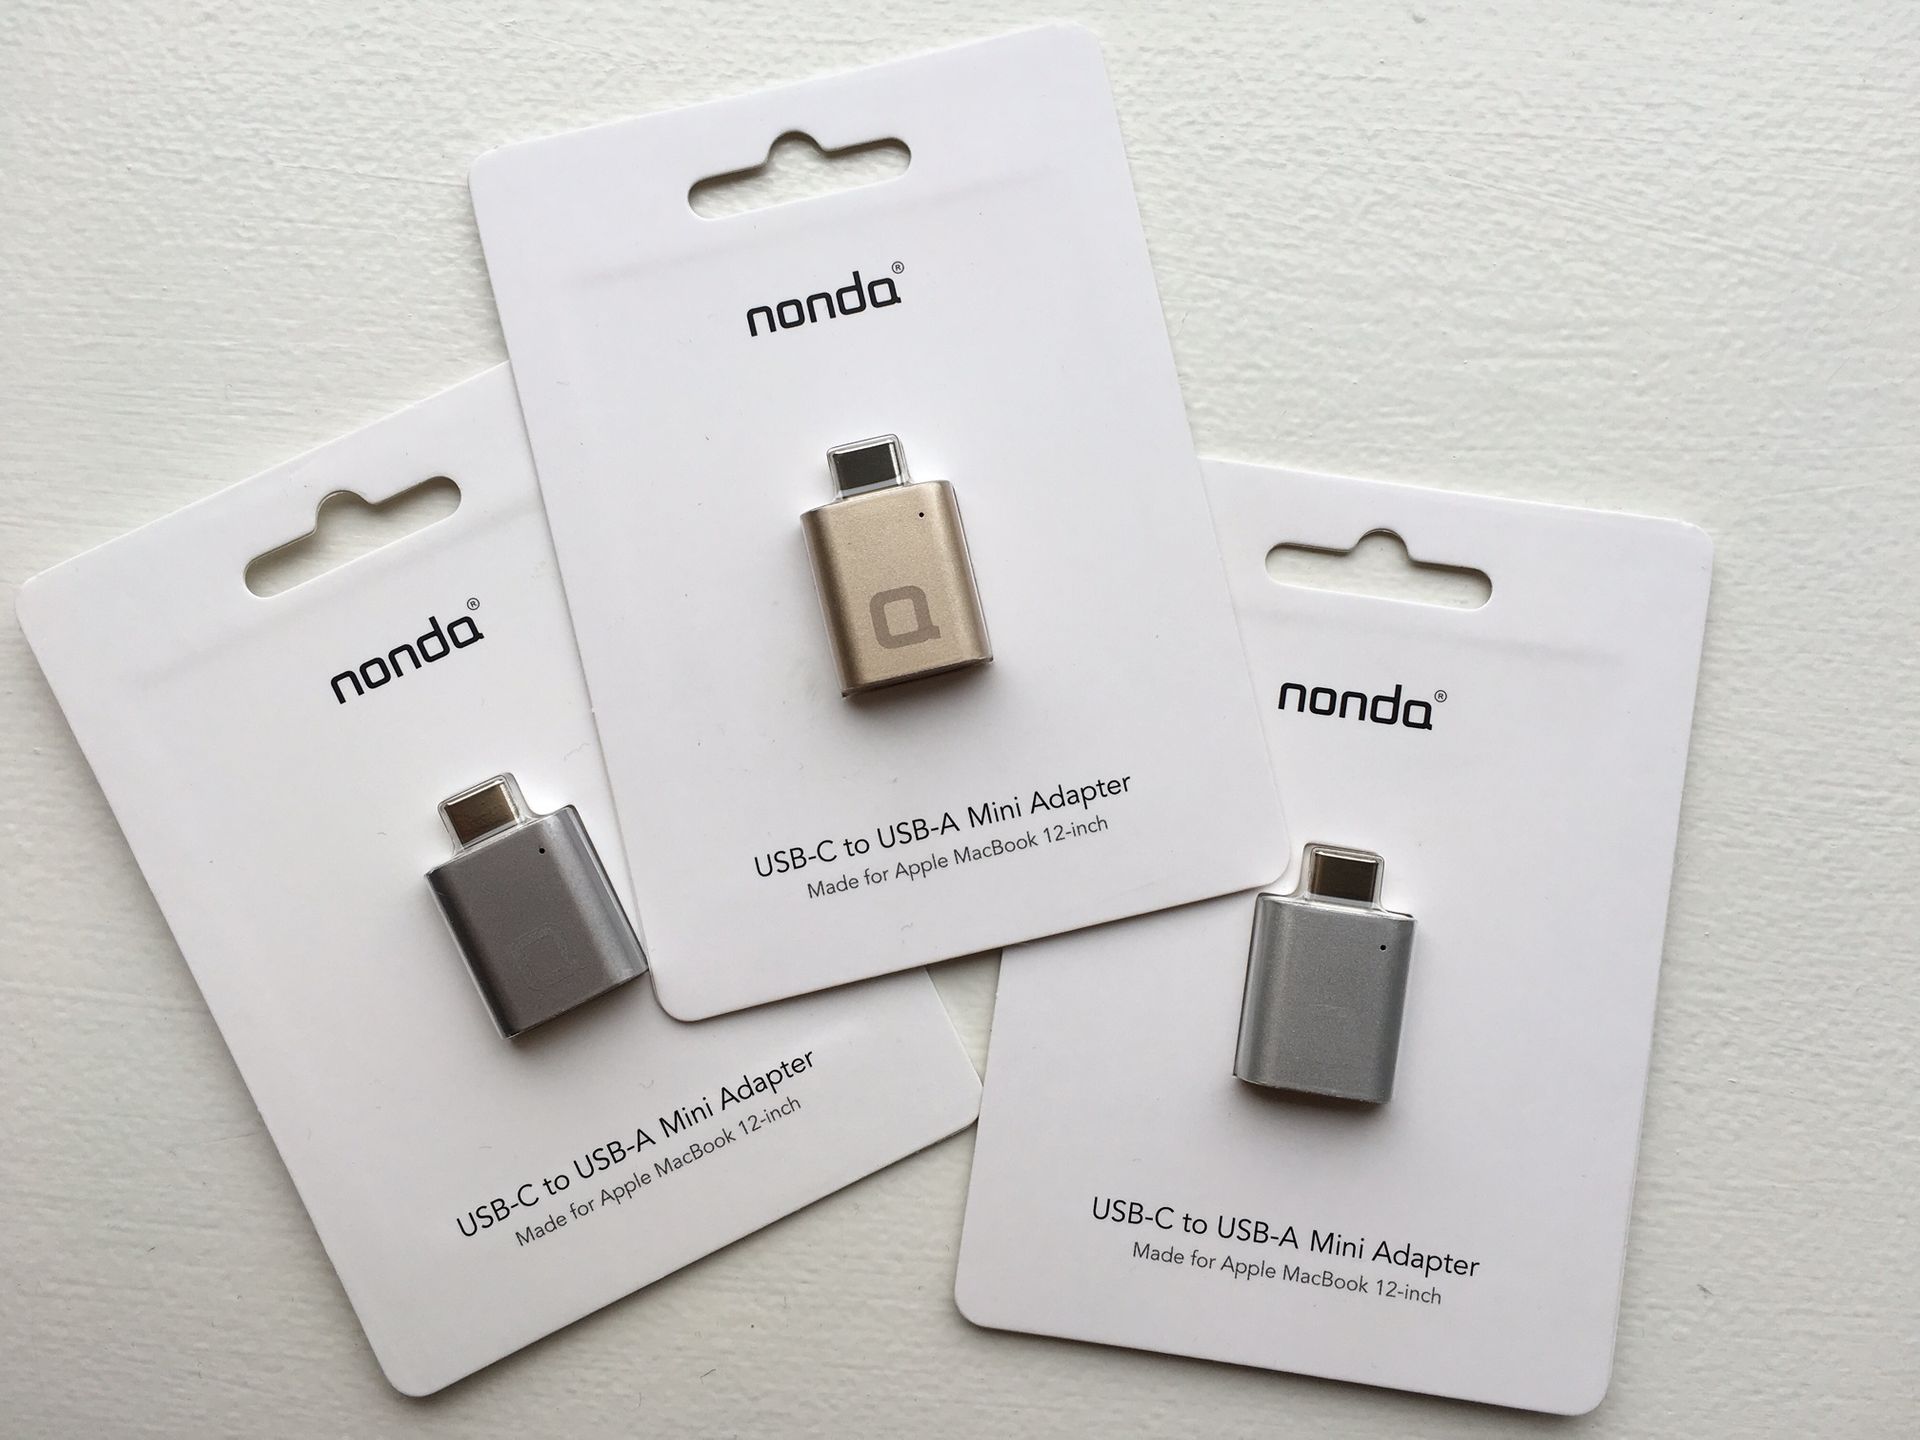 Kloppen daar ben ik het mee eens Haarvaten Nonda USB-C to USB 3.0 Mini Adapter review | Odd One Out